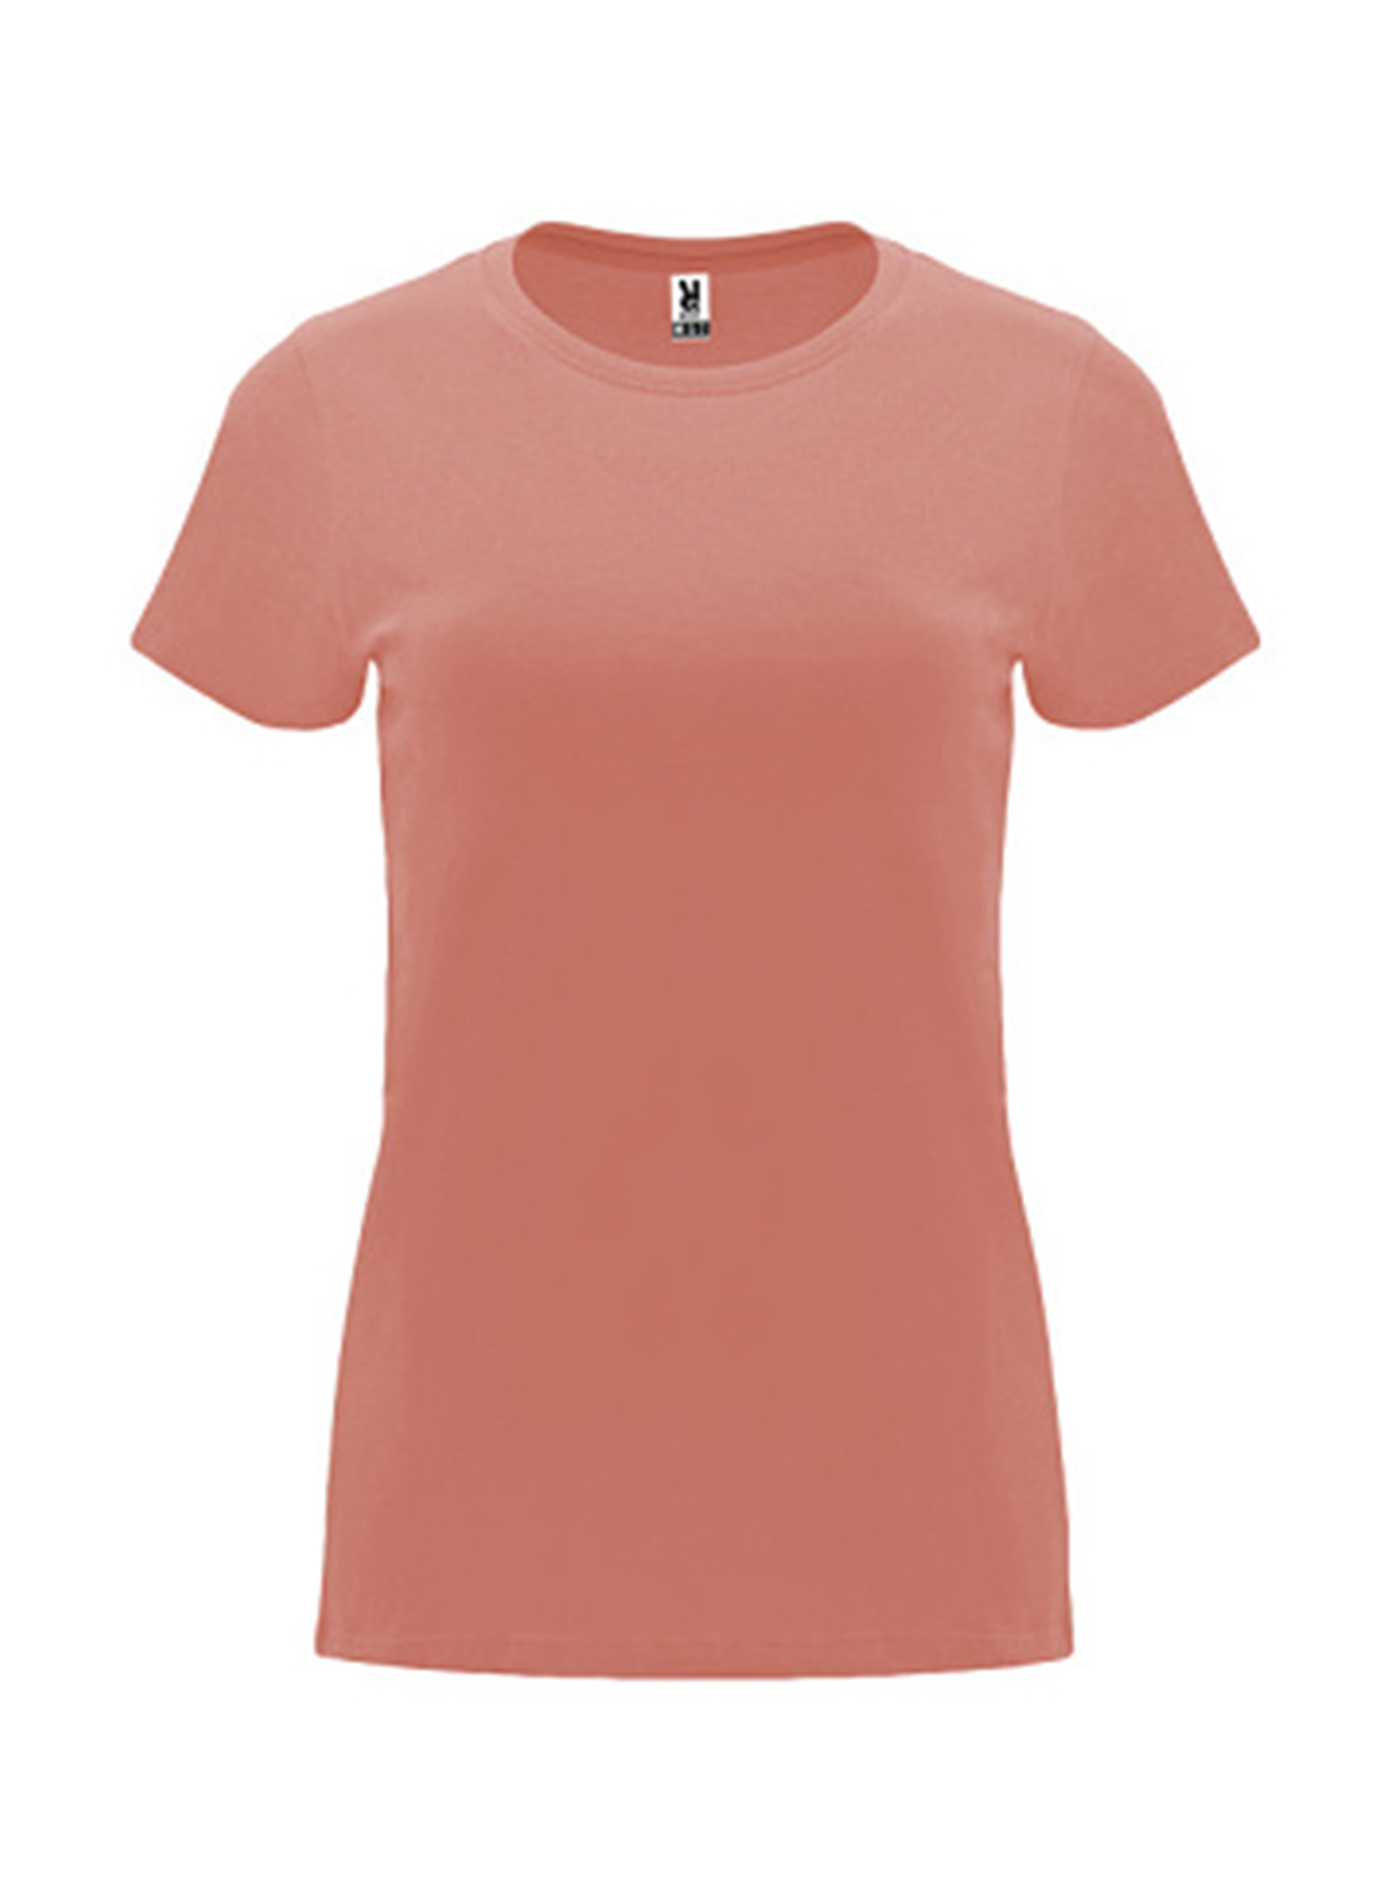 Dámské tričko Roly Capri - Elektrická oranžová L